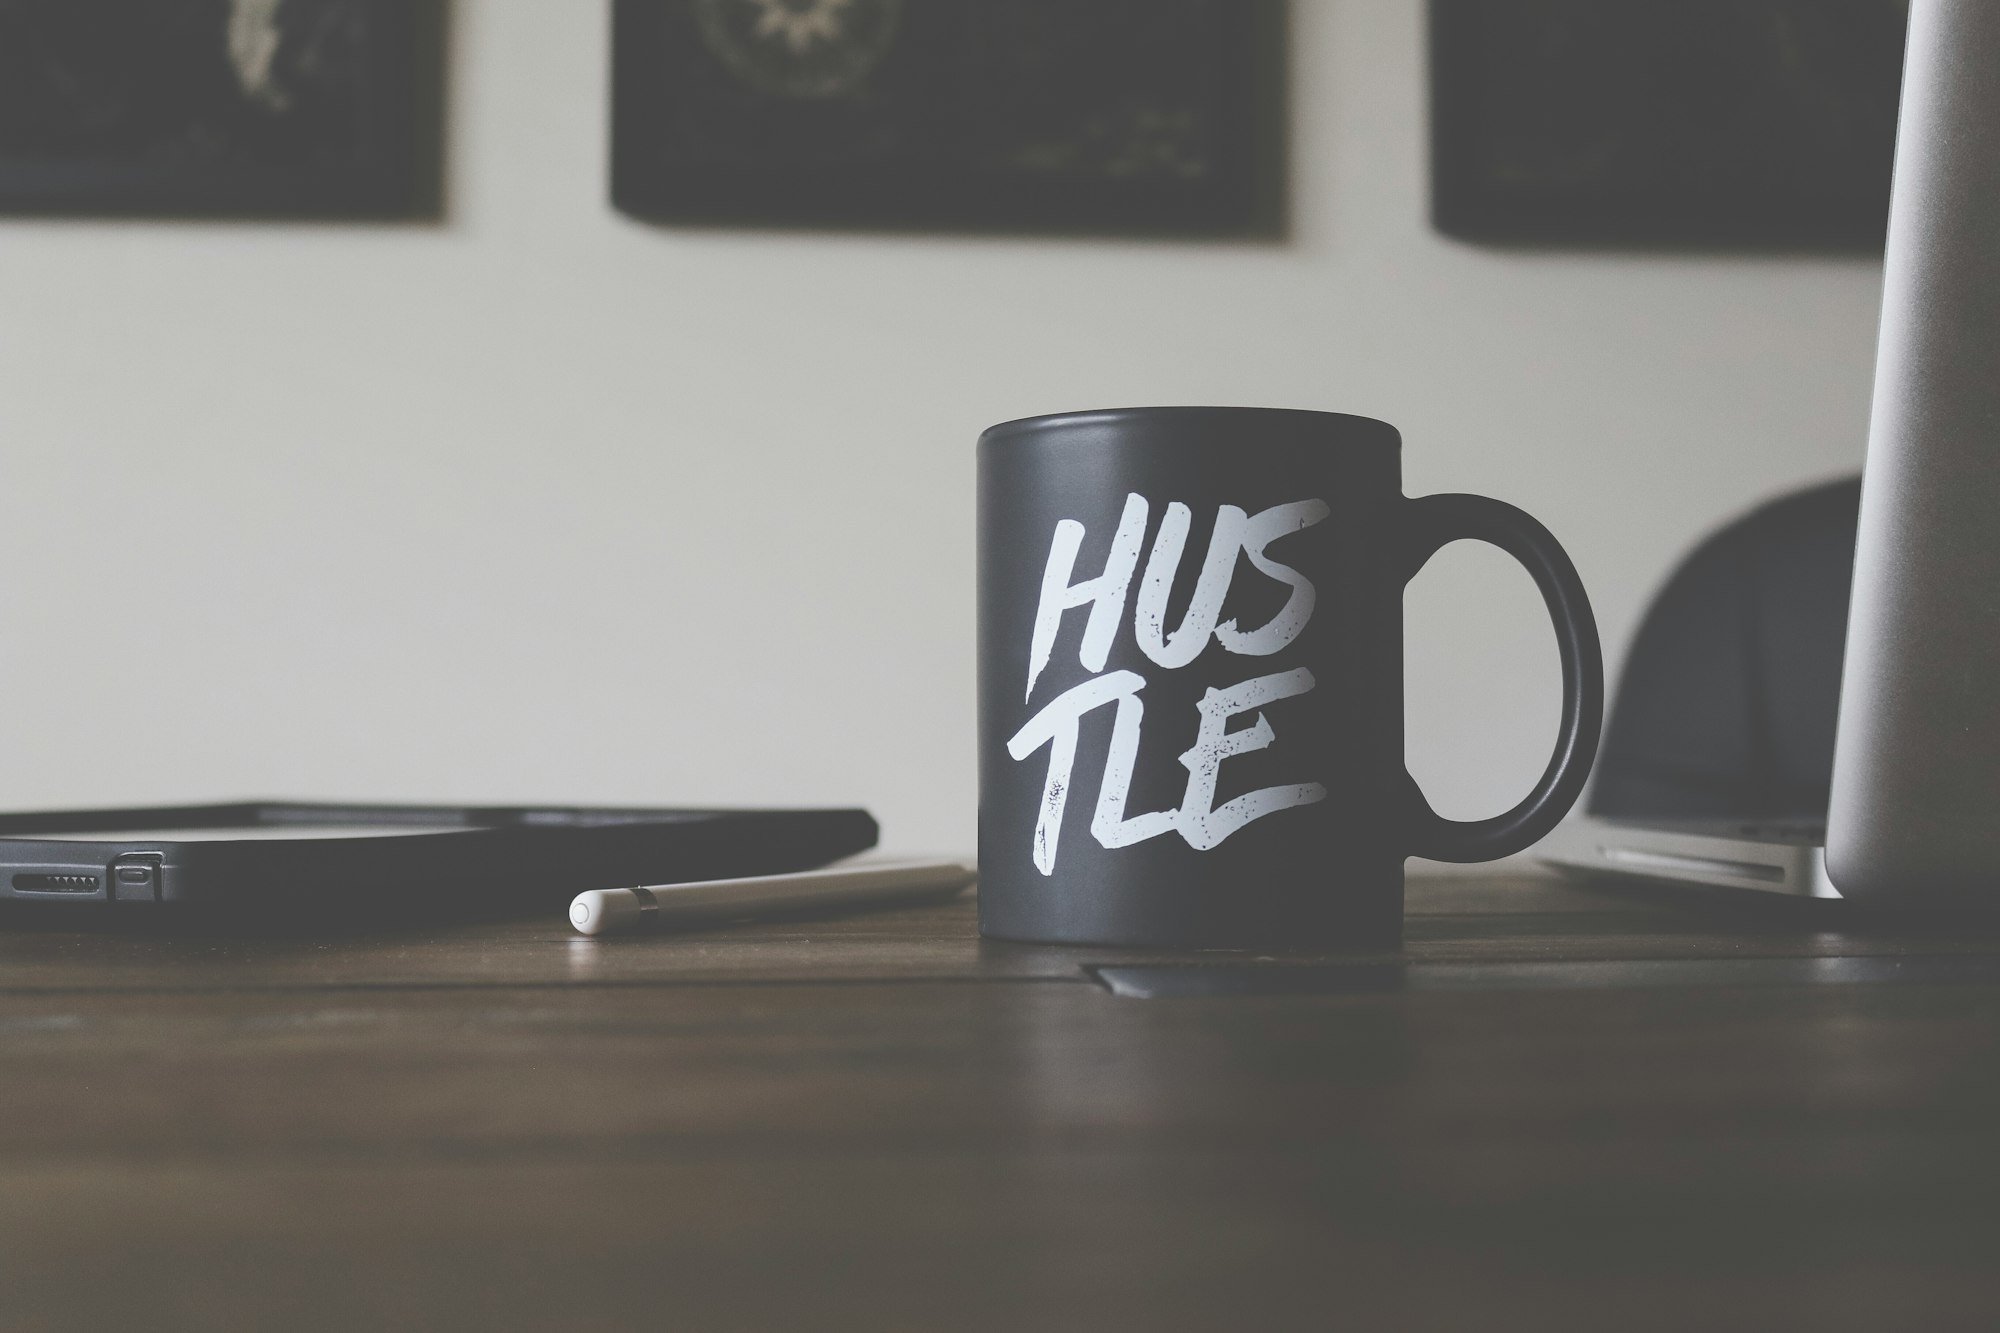 The follow up hustle: How I got Gary Vaynerchuk to do an interview